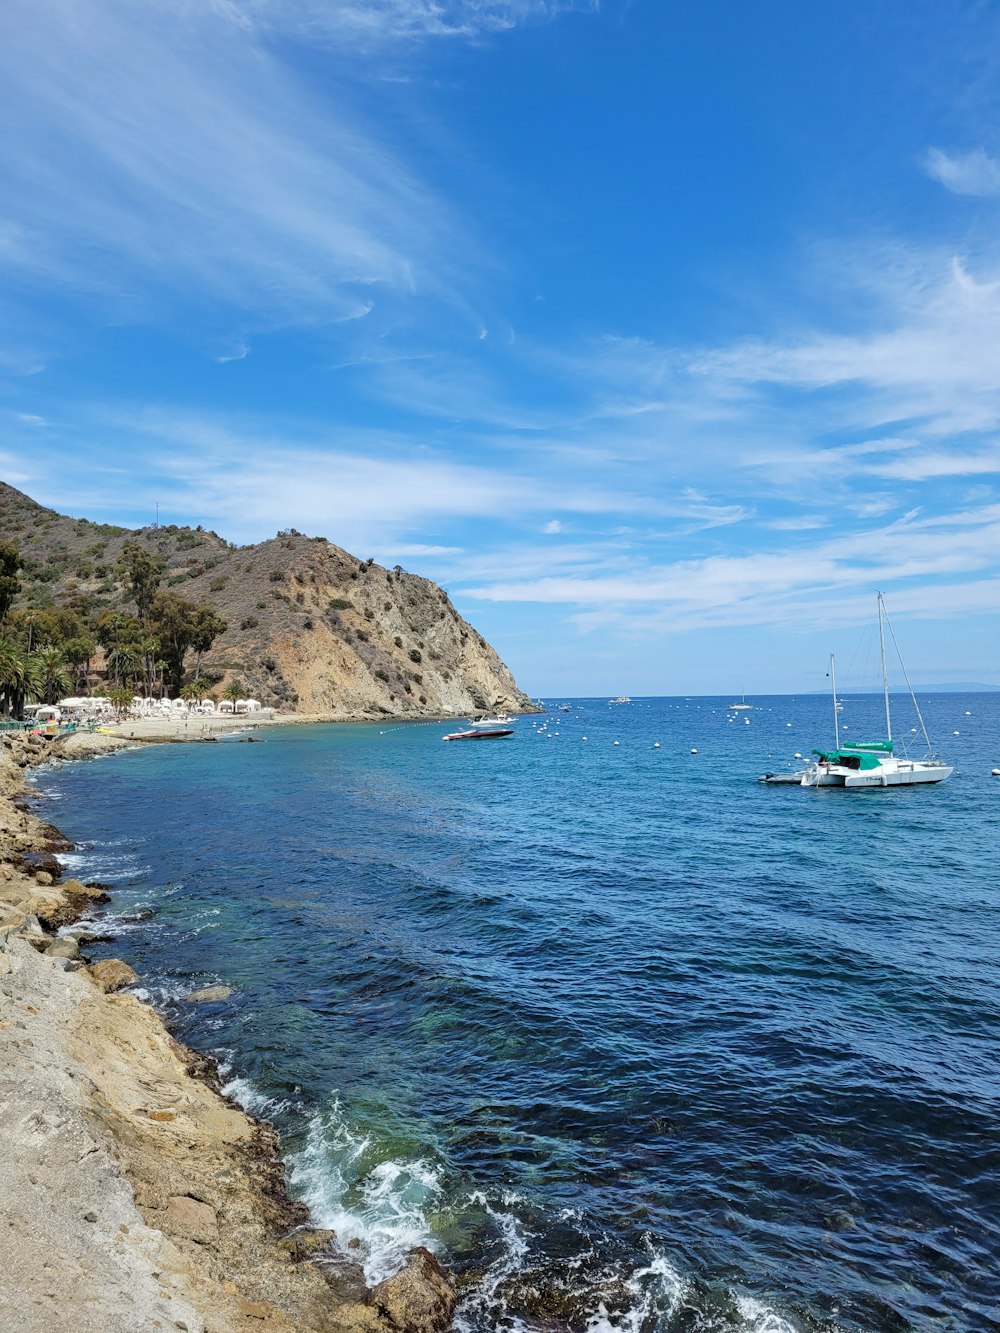 Bateau blanc sur la mer près de la formation rocheuse brune sous le ciel bleu pendant la journée